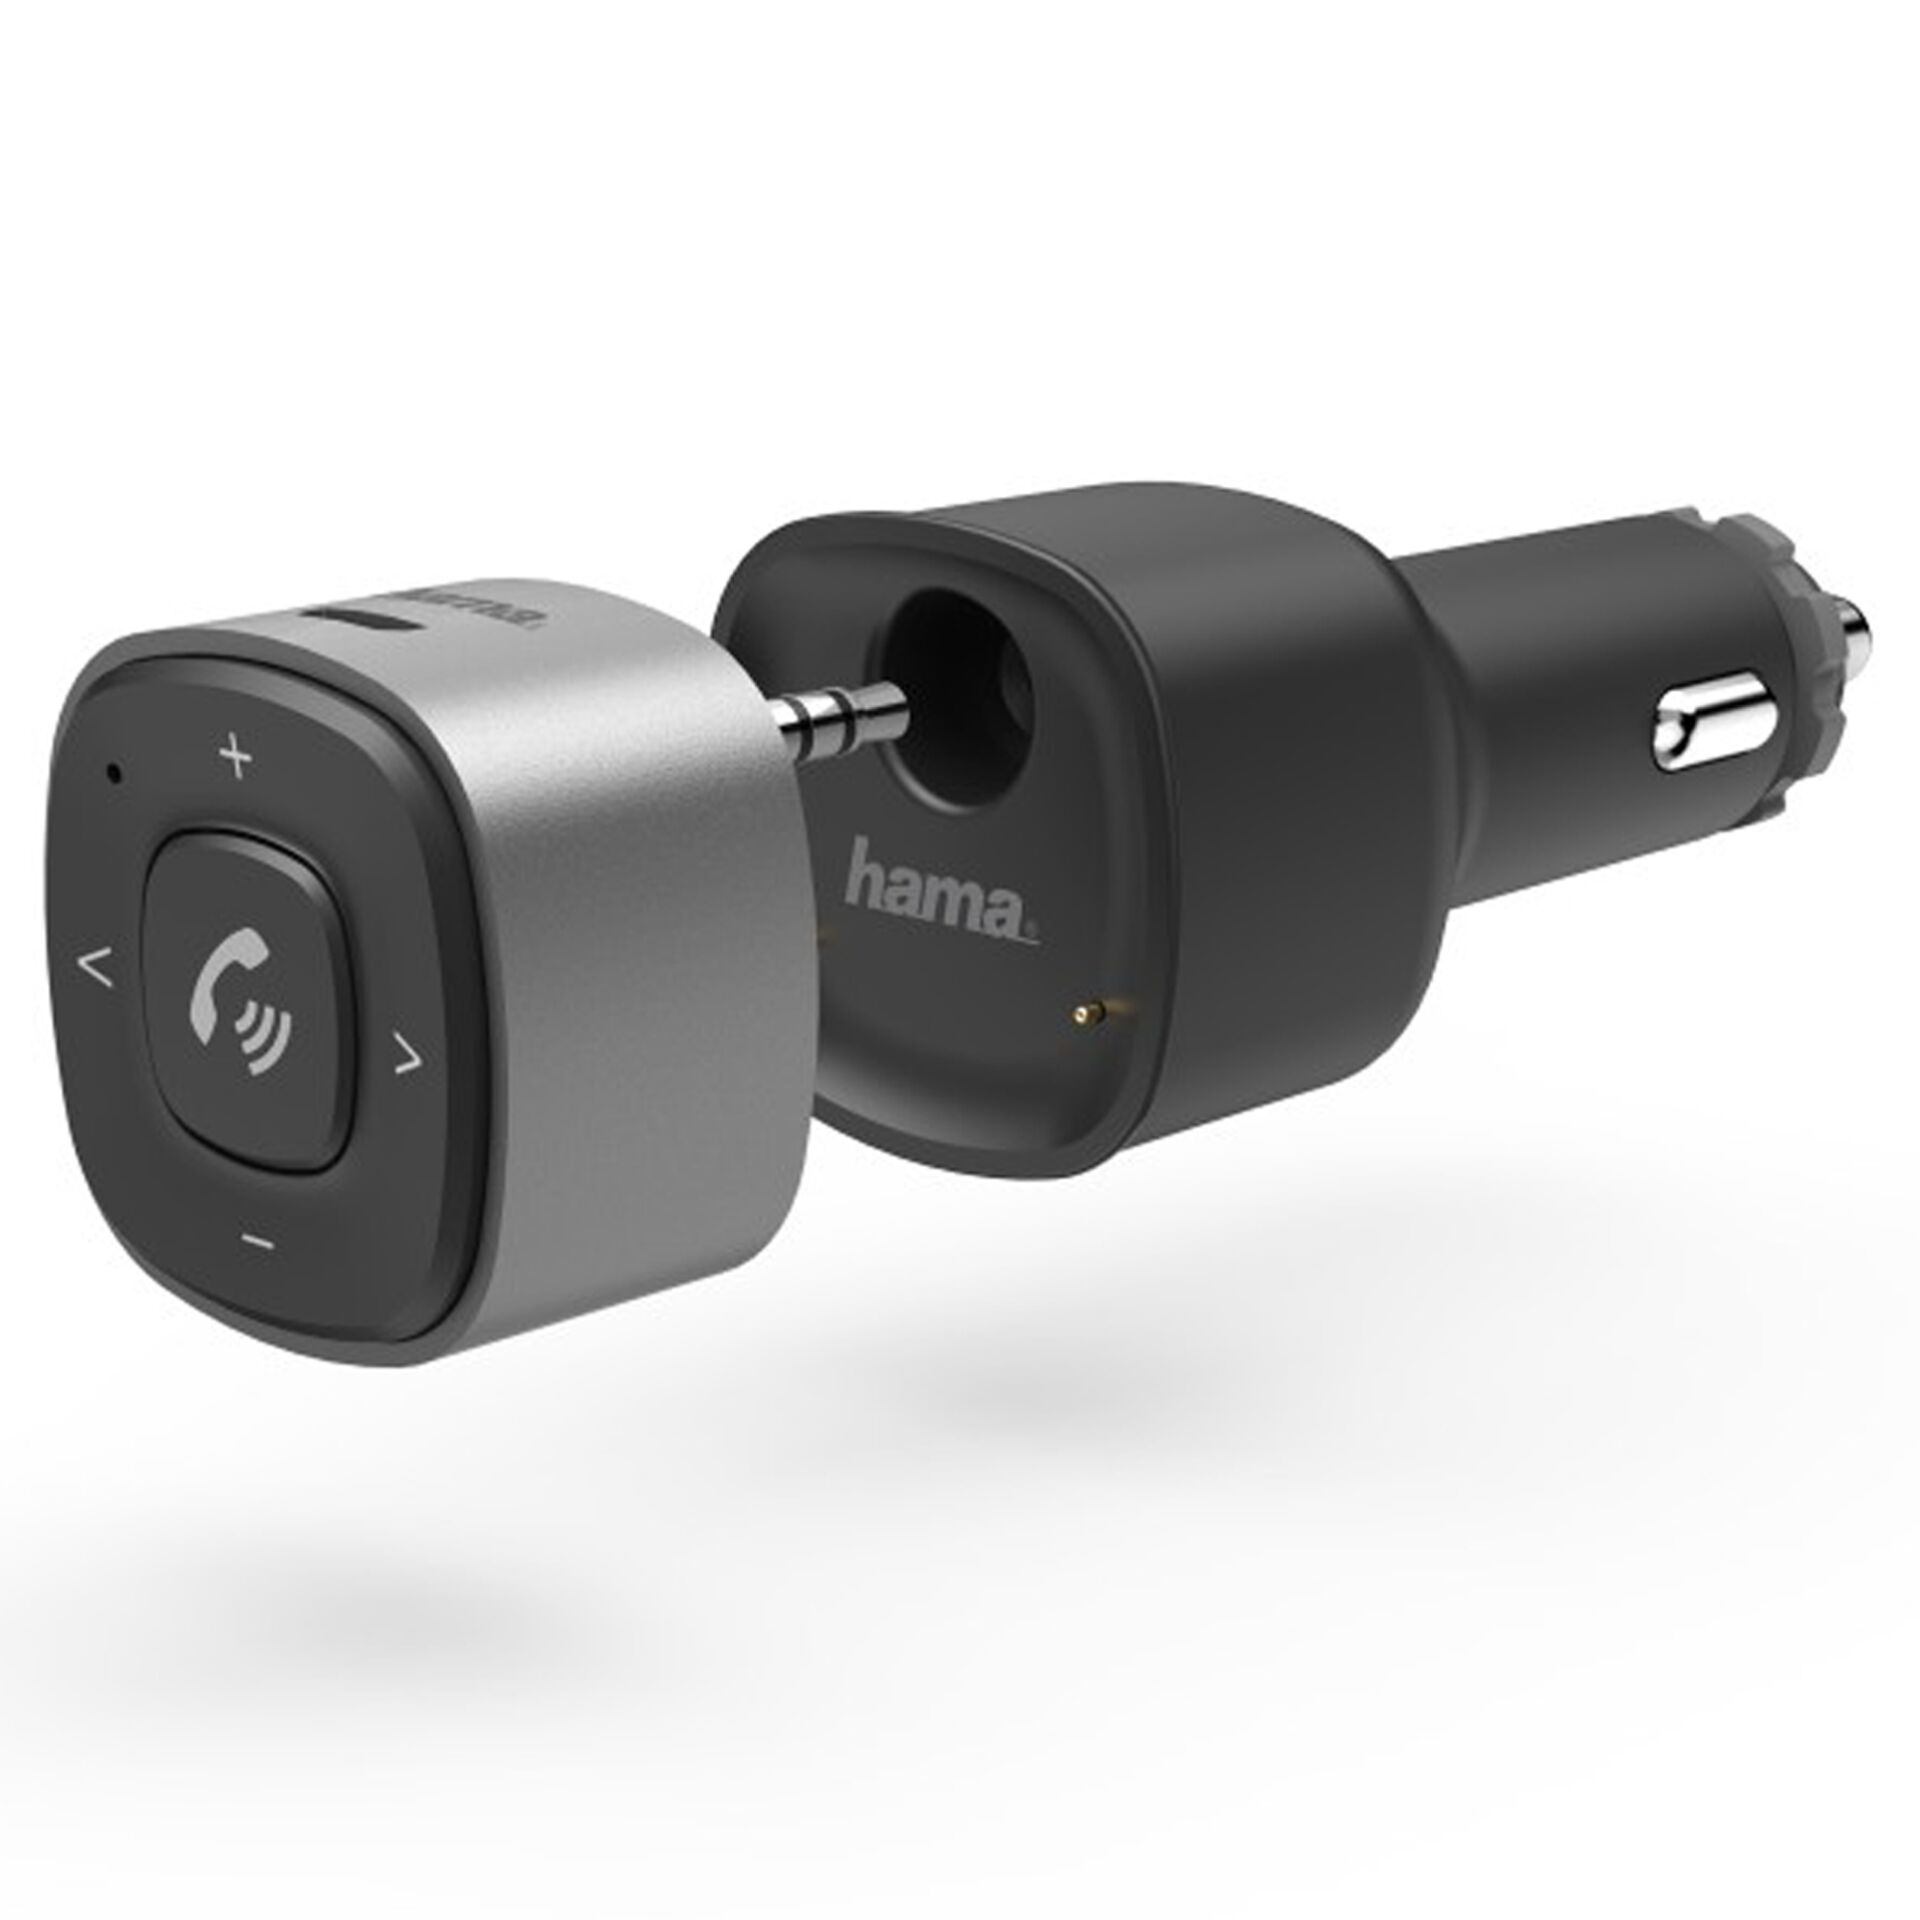 Hama Bluetooth-Receiver für KfZ 3,5mm Stecker und USB-Ladege